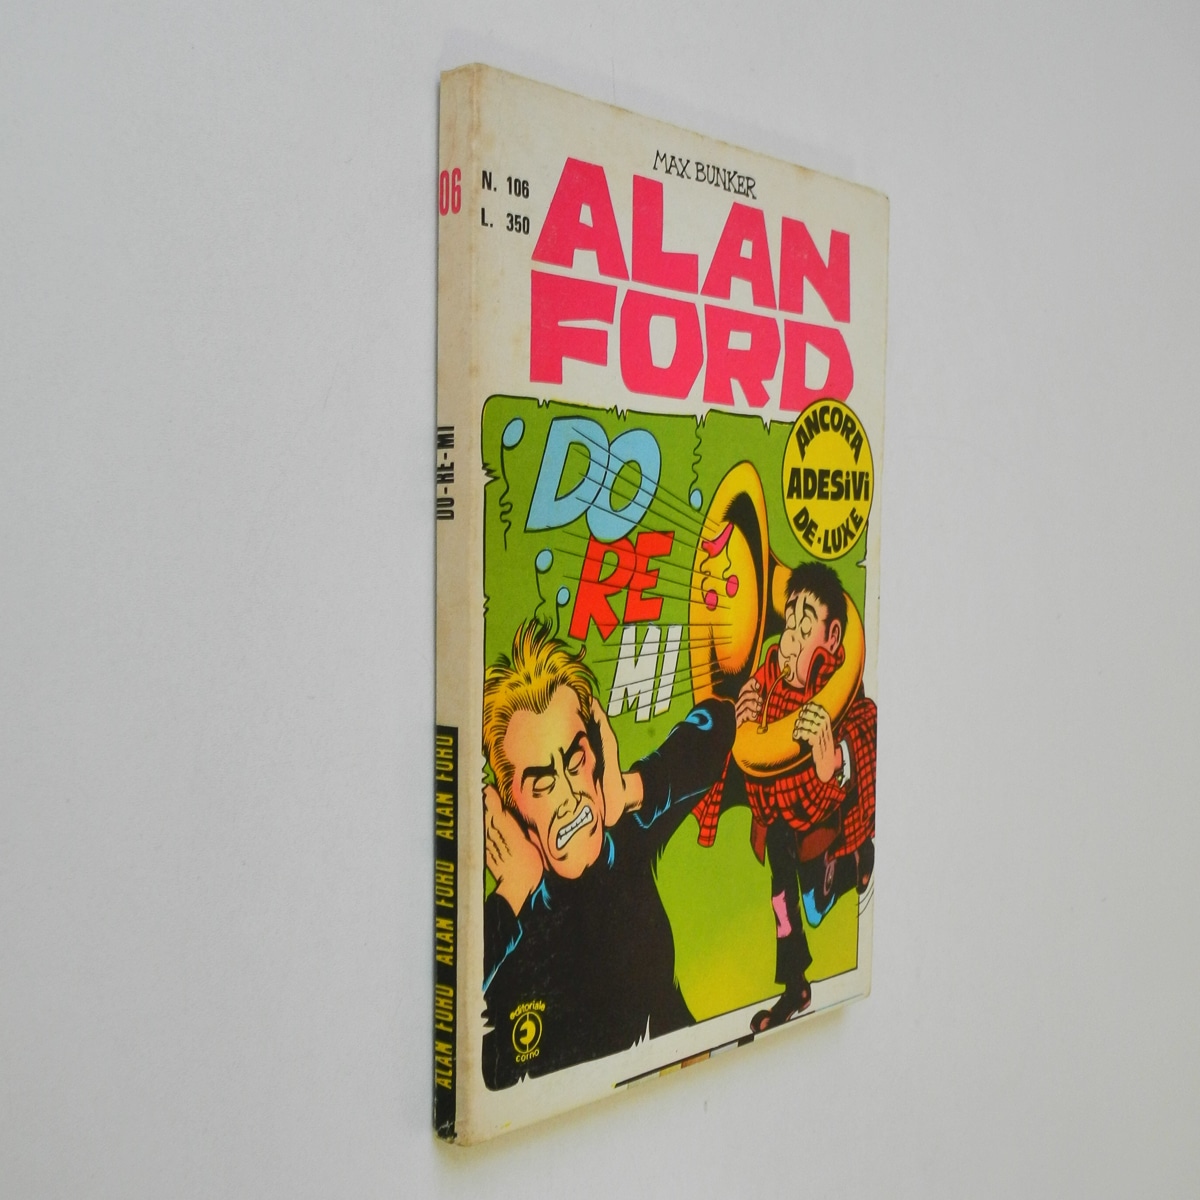 Alan Ford n. 106 con Adesivi Do-re-mi